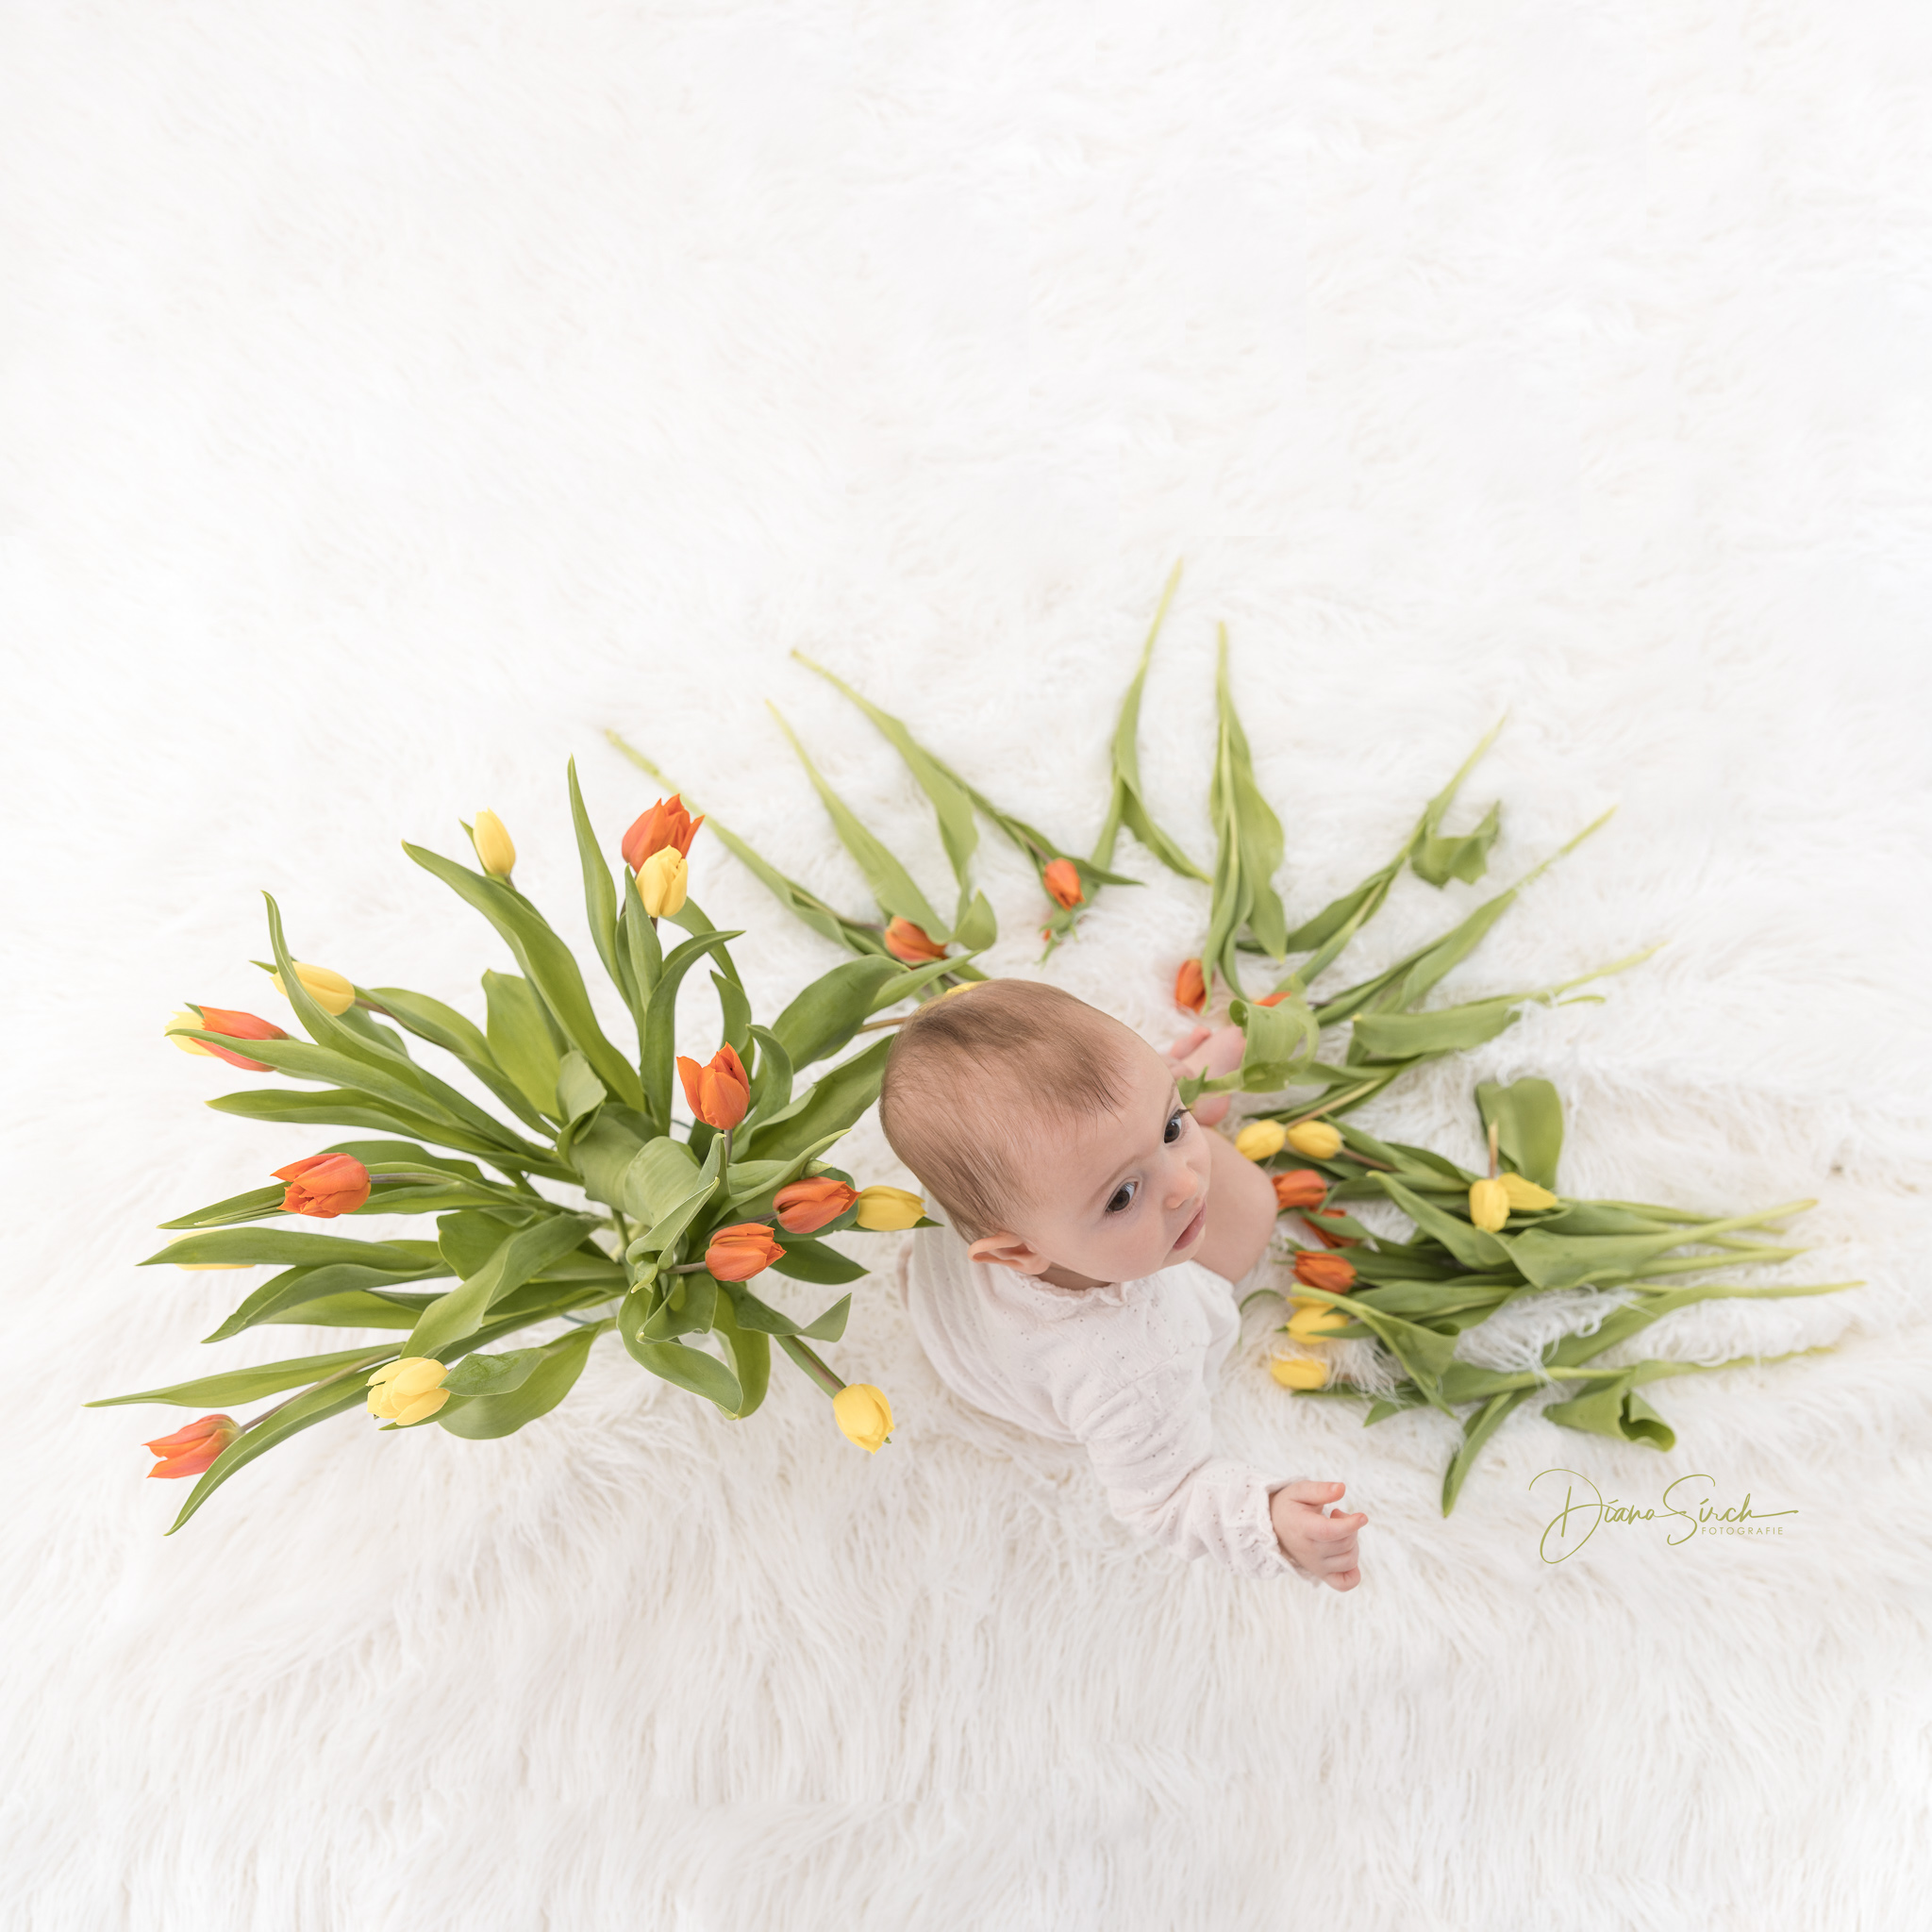 Baby mit Tulpen